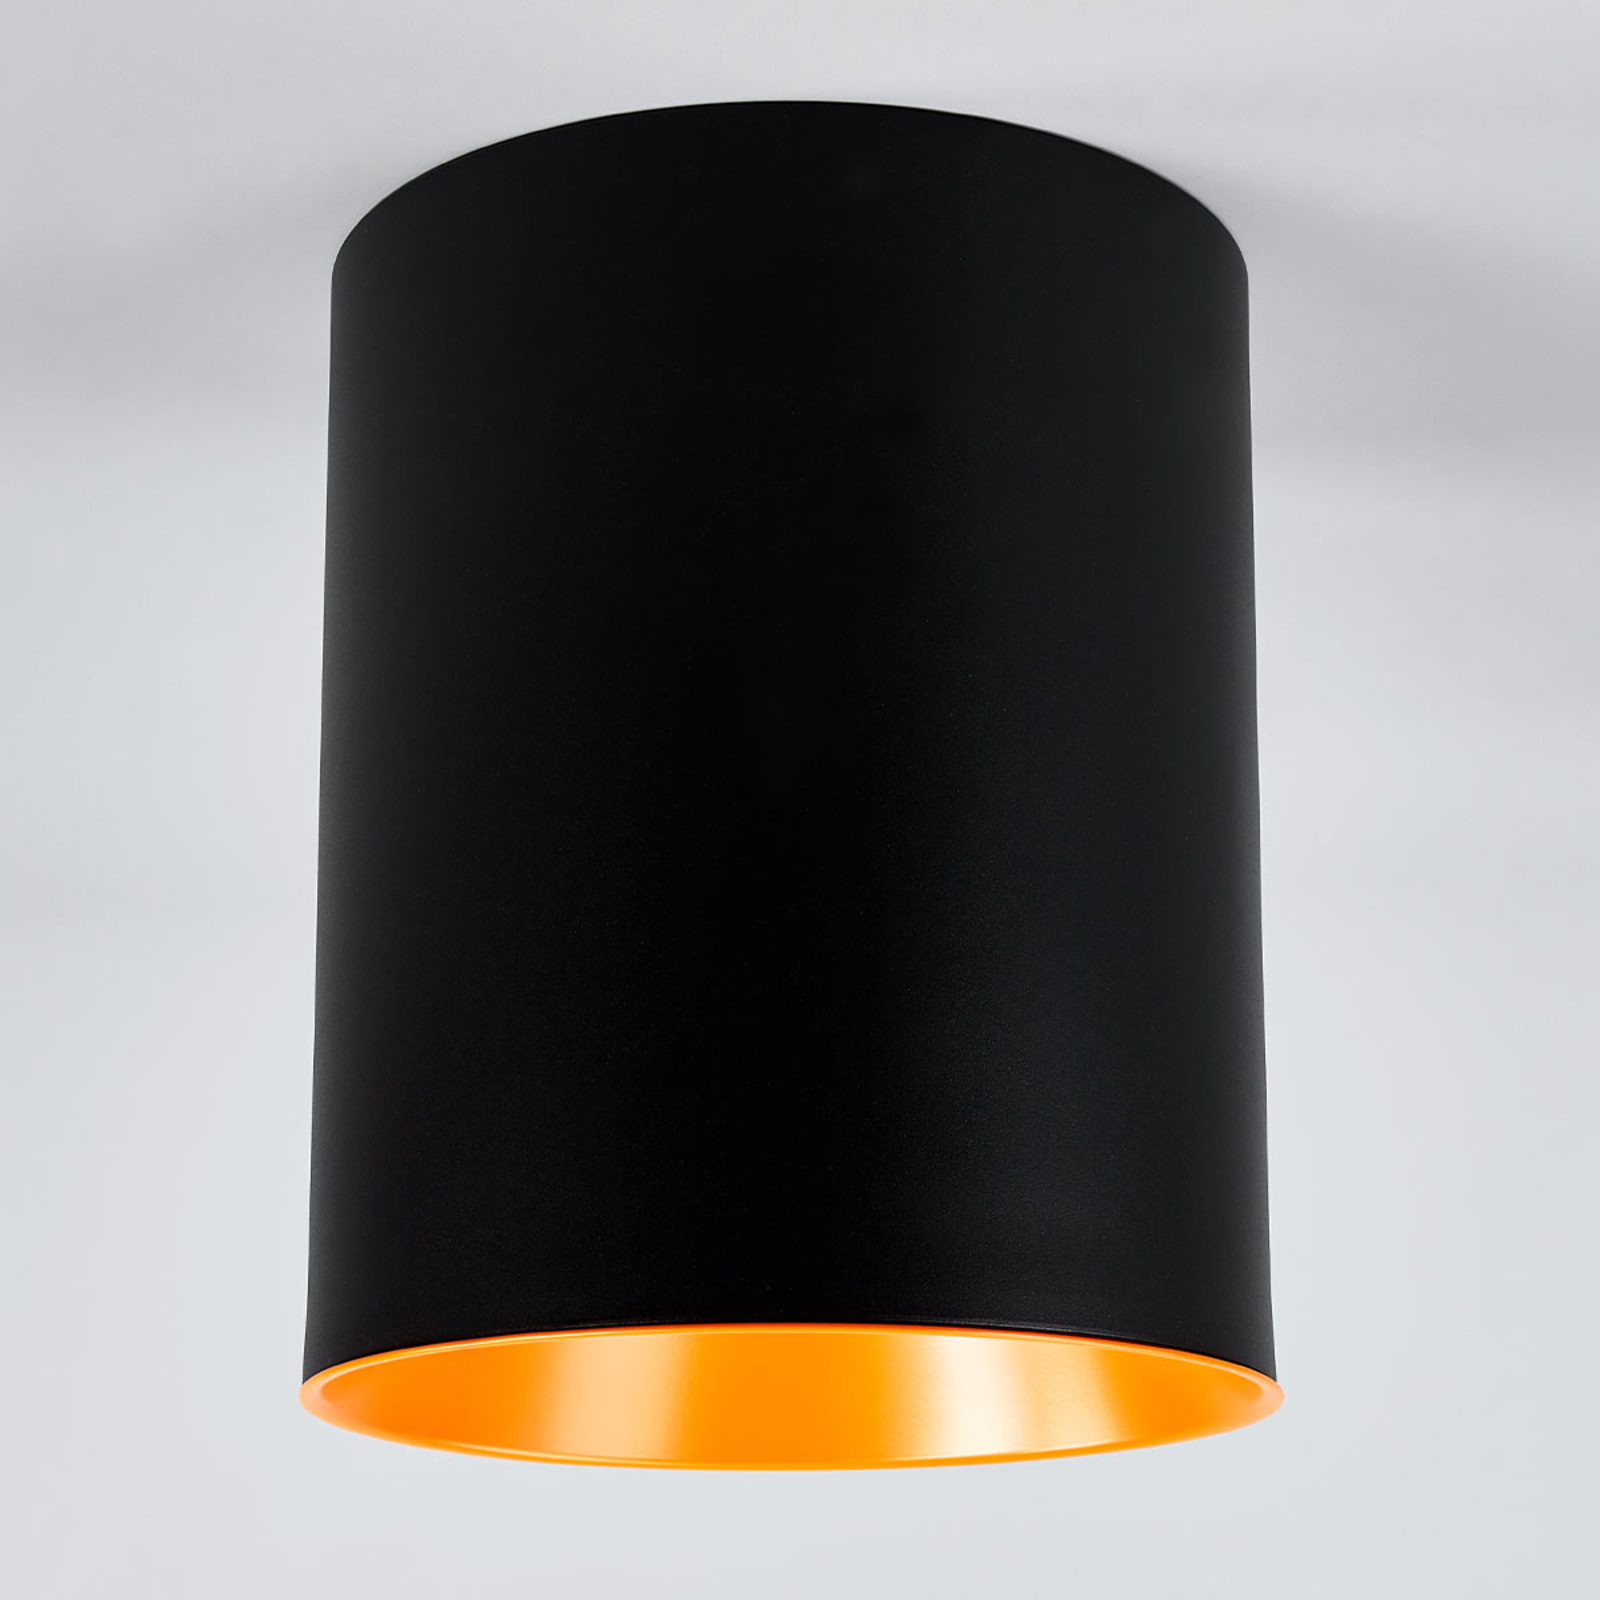 Plafón LED de diseño Tagora con forma cilíndrica